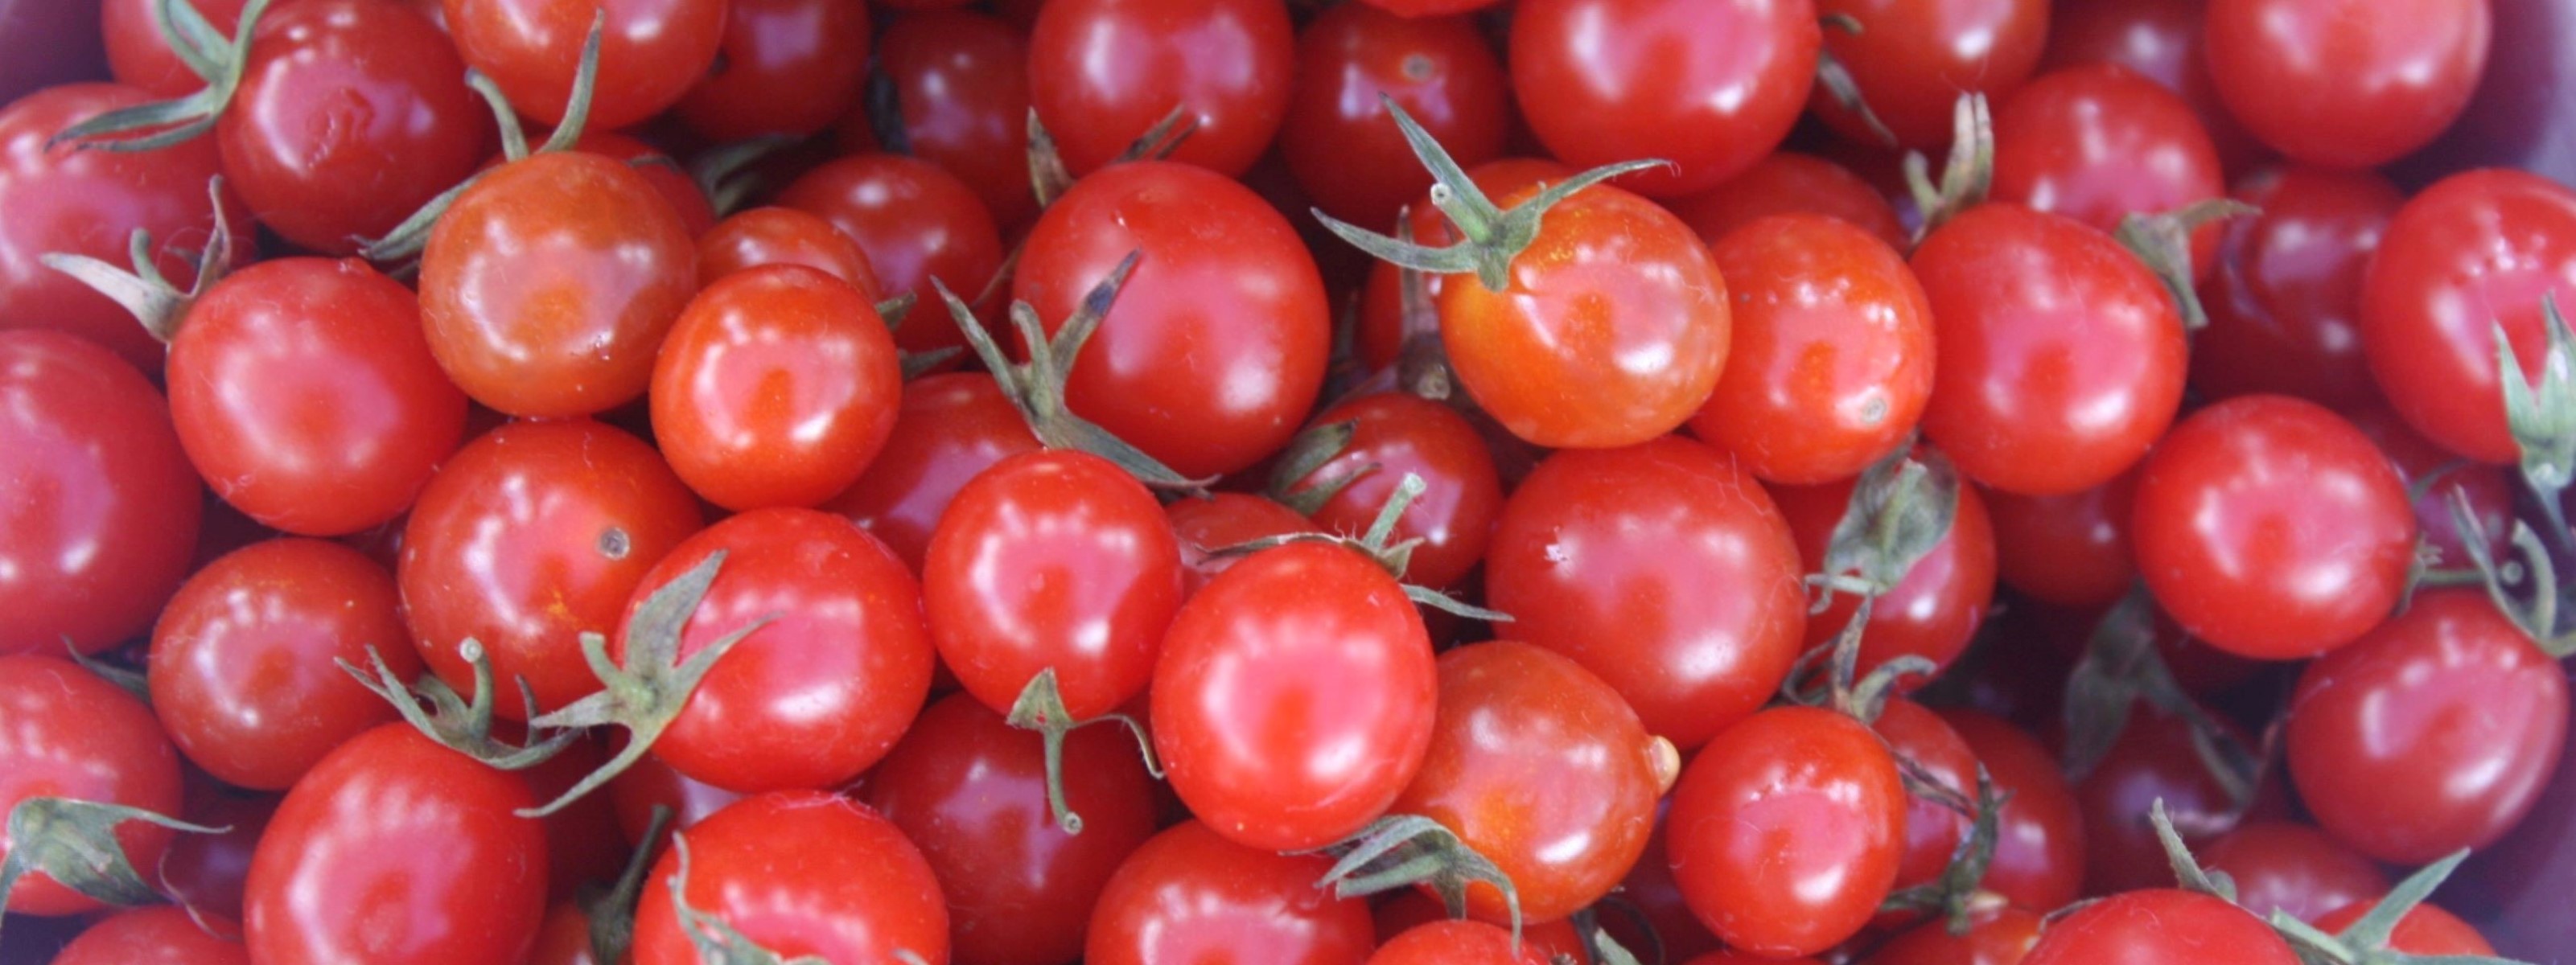 Cherry tomatoes header photo